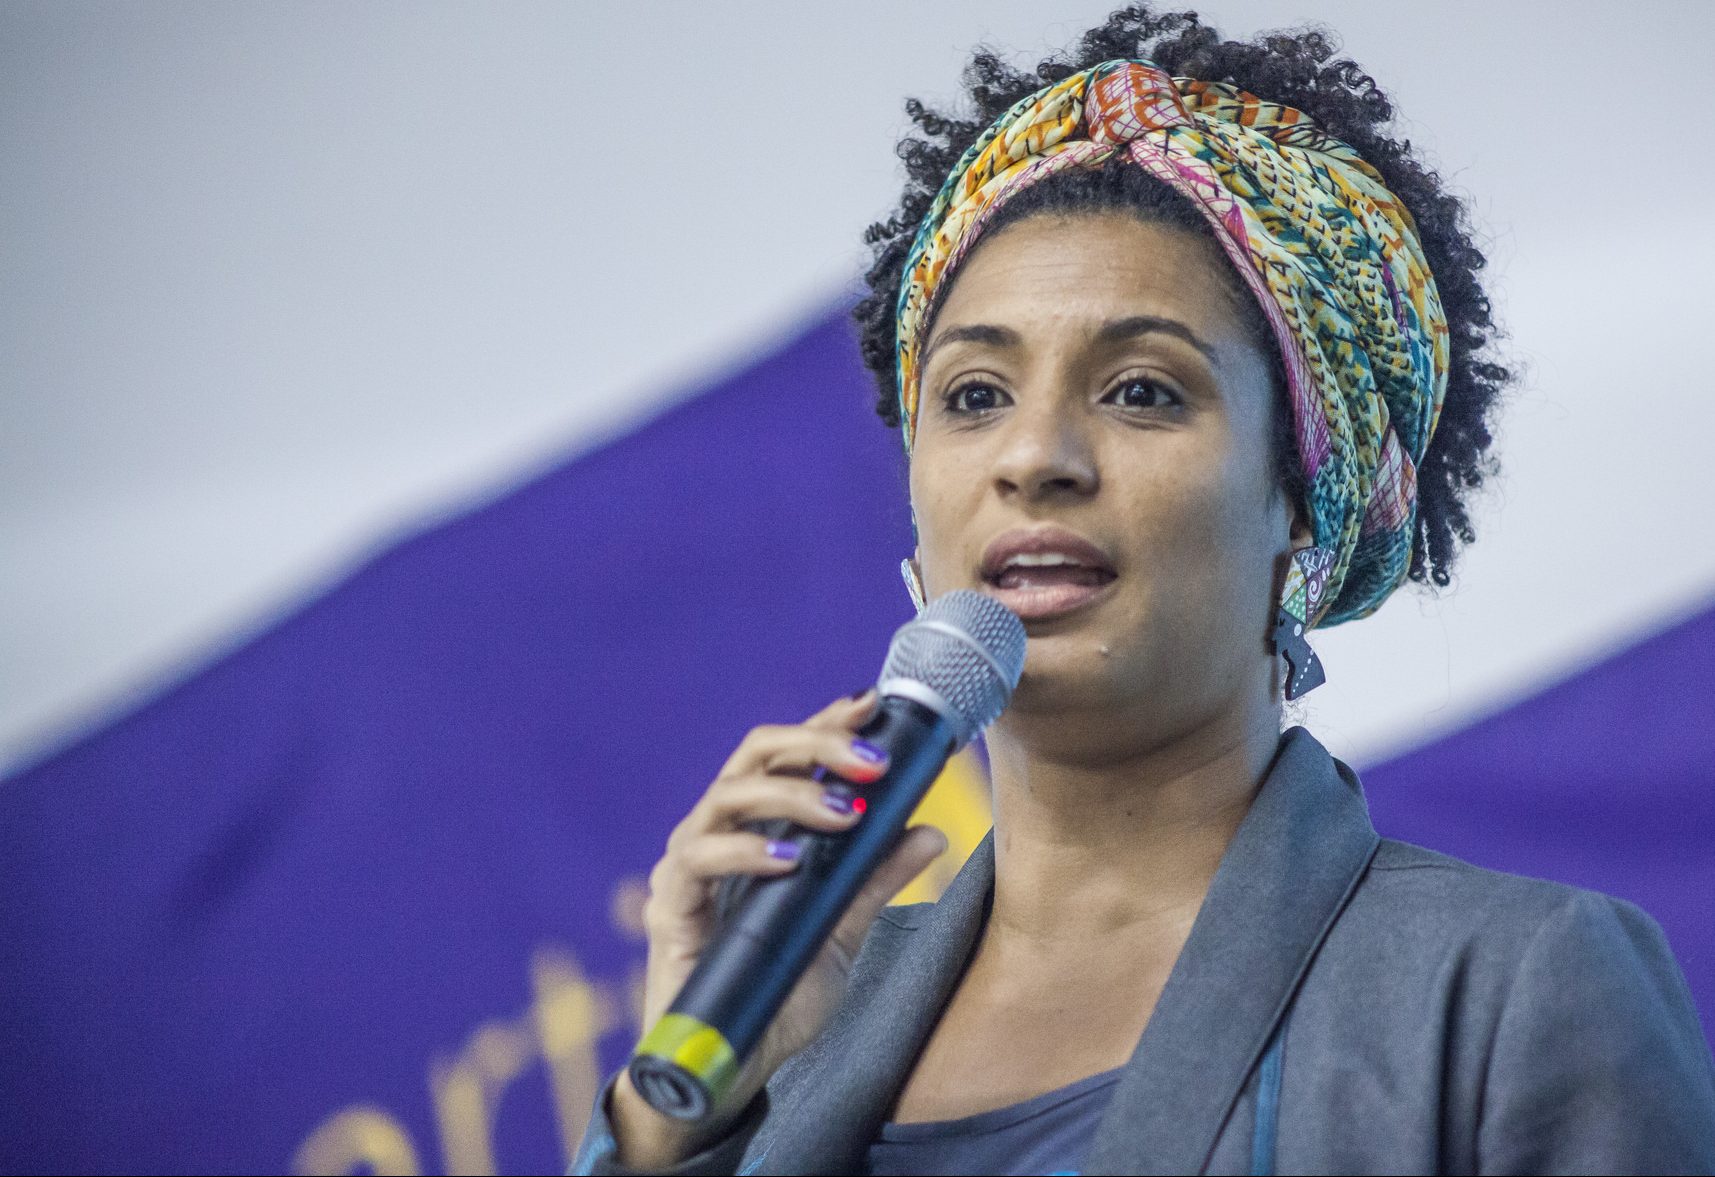 A então candidata a vereadora do Rio de Janeiro, Marielle Franco, em evento de sobre representatividade feminina nas eleições. Marielle foi executada no dia 14/03/2018.
 
Foto: Mídia NINJA